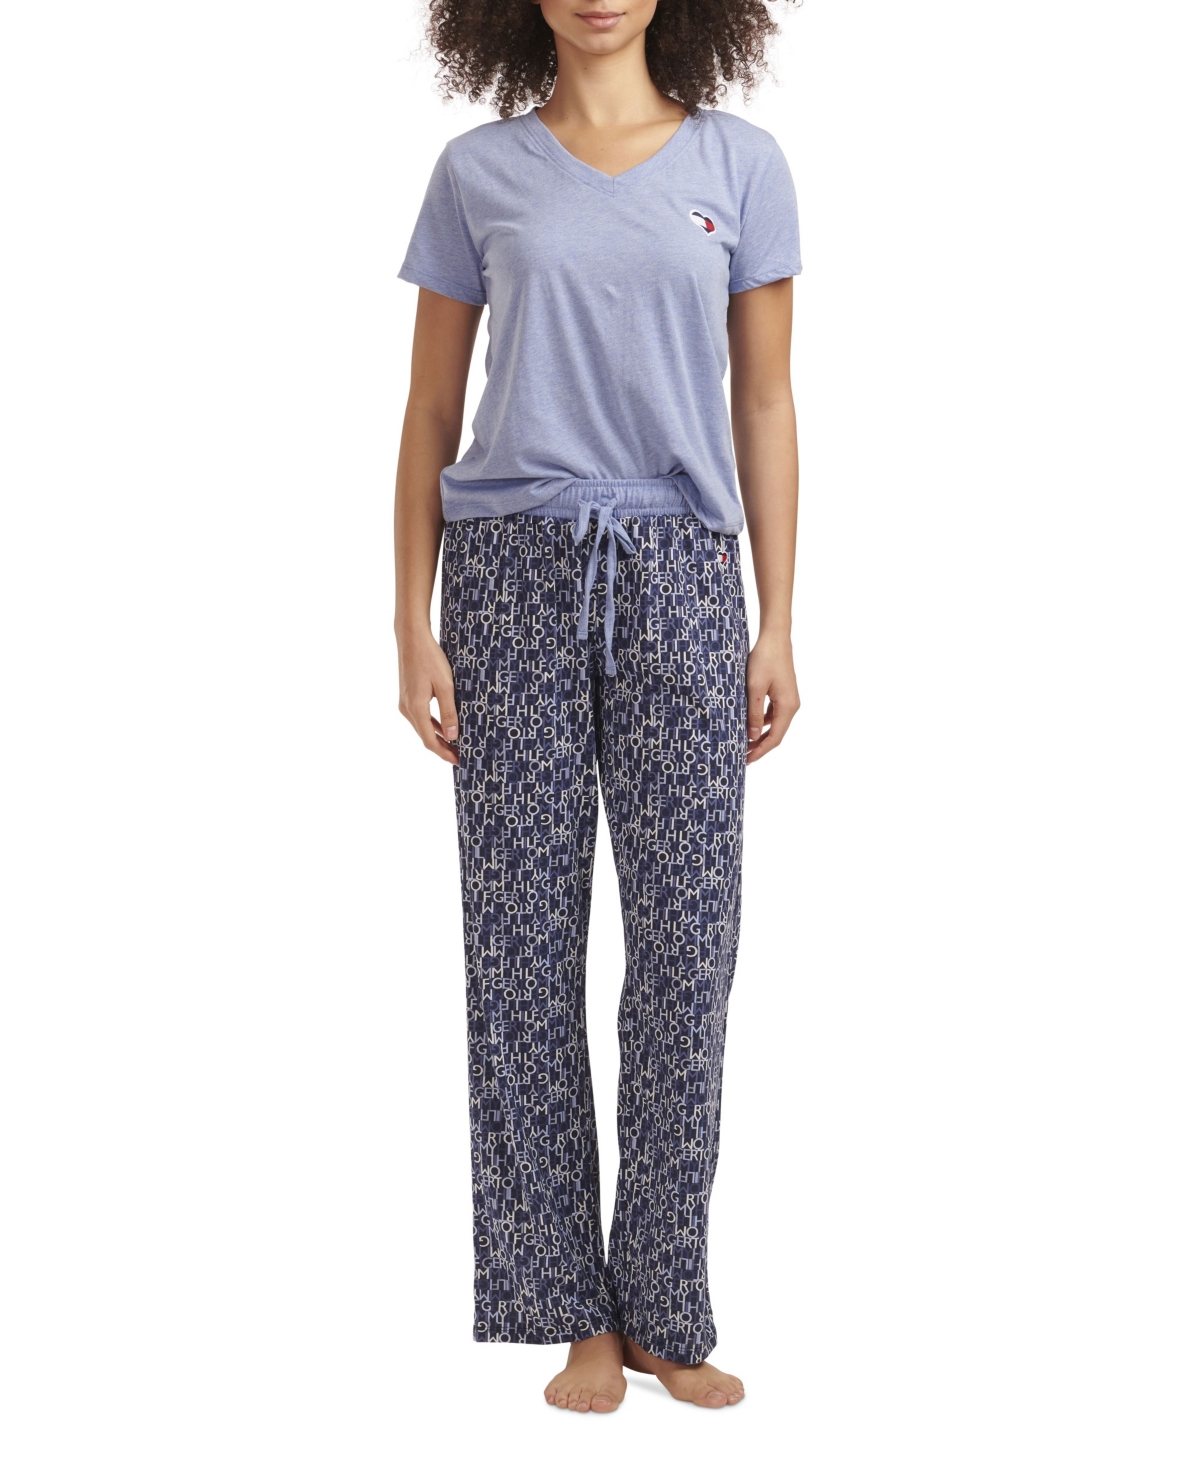 Tommy Hilfiger Women's V-Neck Knit Heart Pajama Set